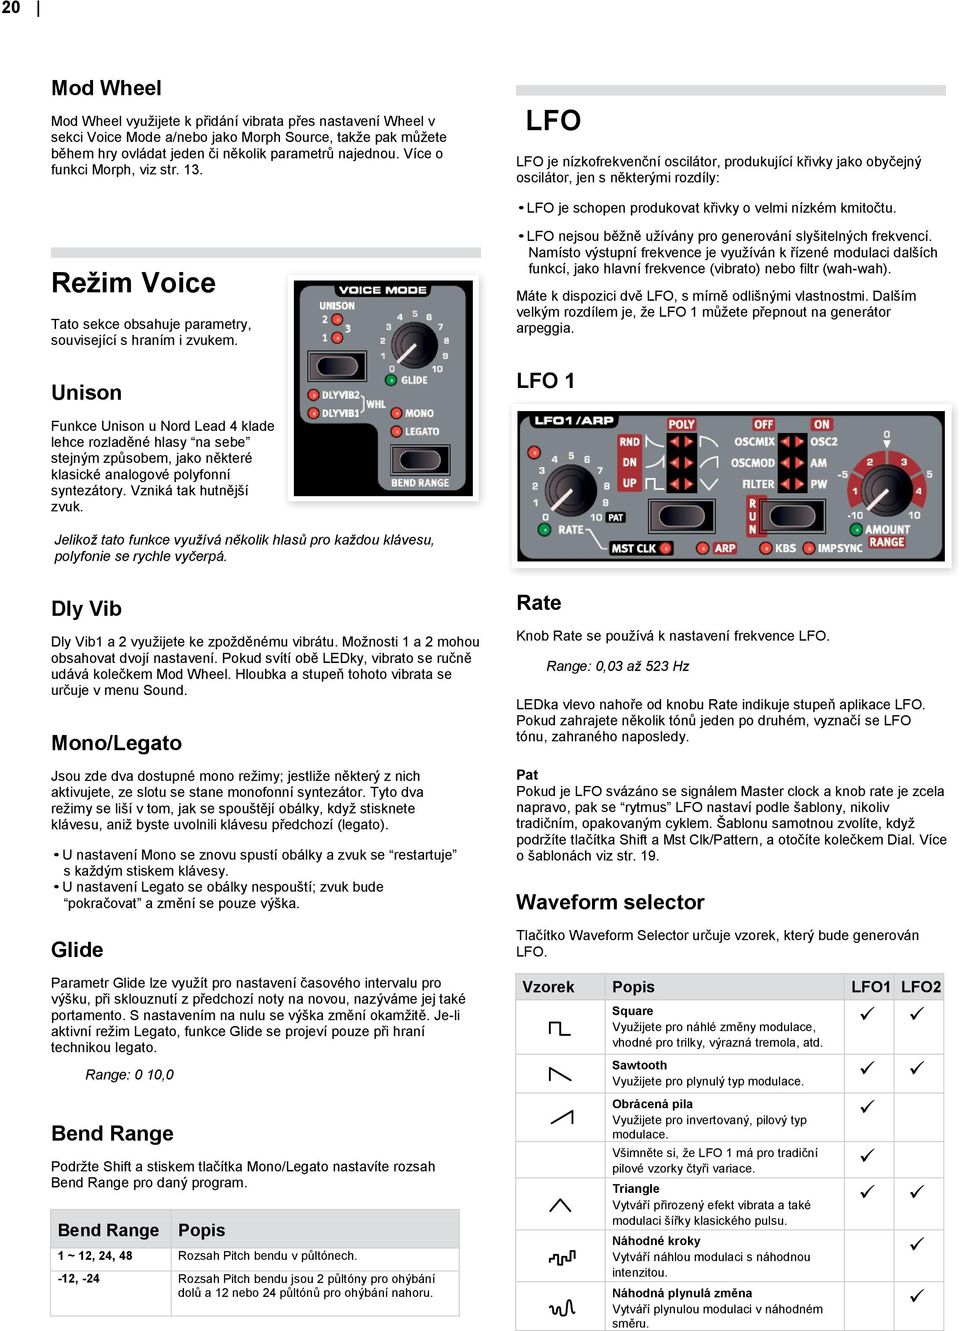 Režim Voice Tato sekce obsahuje parametry, související s hraním i zvukem. Unison LFO nejsou běžně užívány pro generování slyšitelných frekvencí.